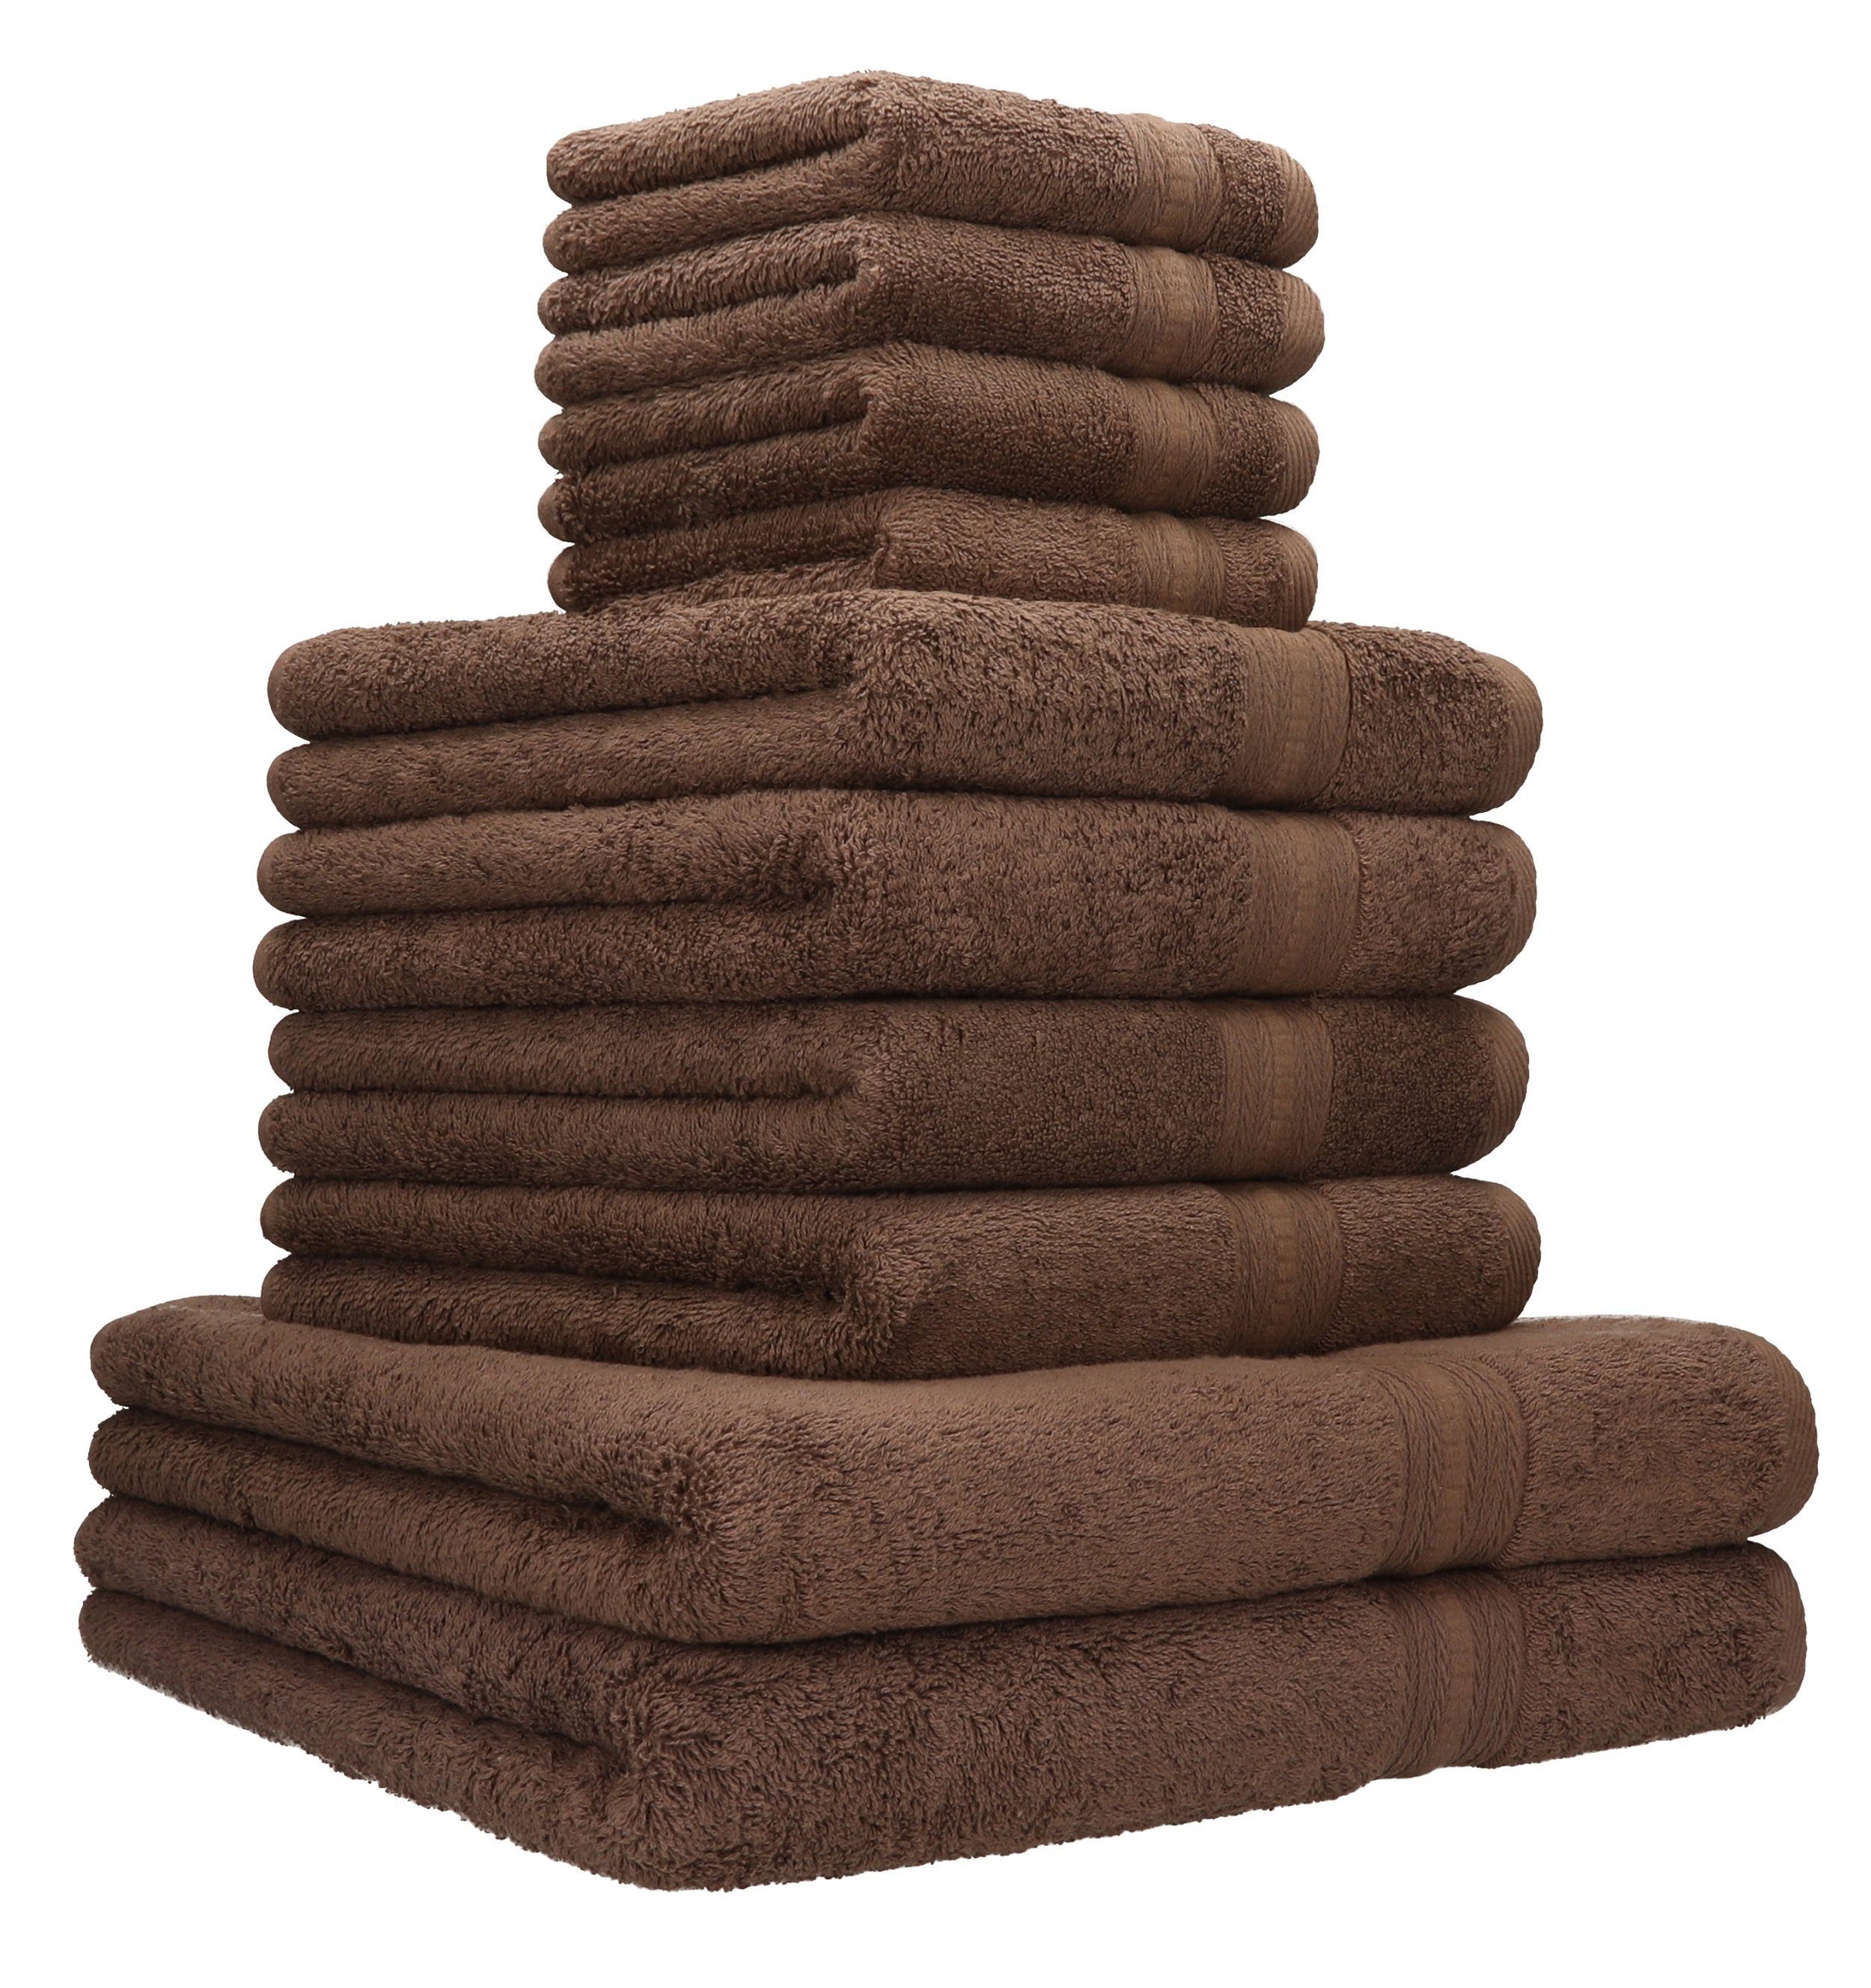 Betz Handtuch Set 10-TLG. Handtuch-Set GOLD Qualität 600g/m² Farbe nussbraun, 100% Baumwolle | Handtuch-Sets